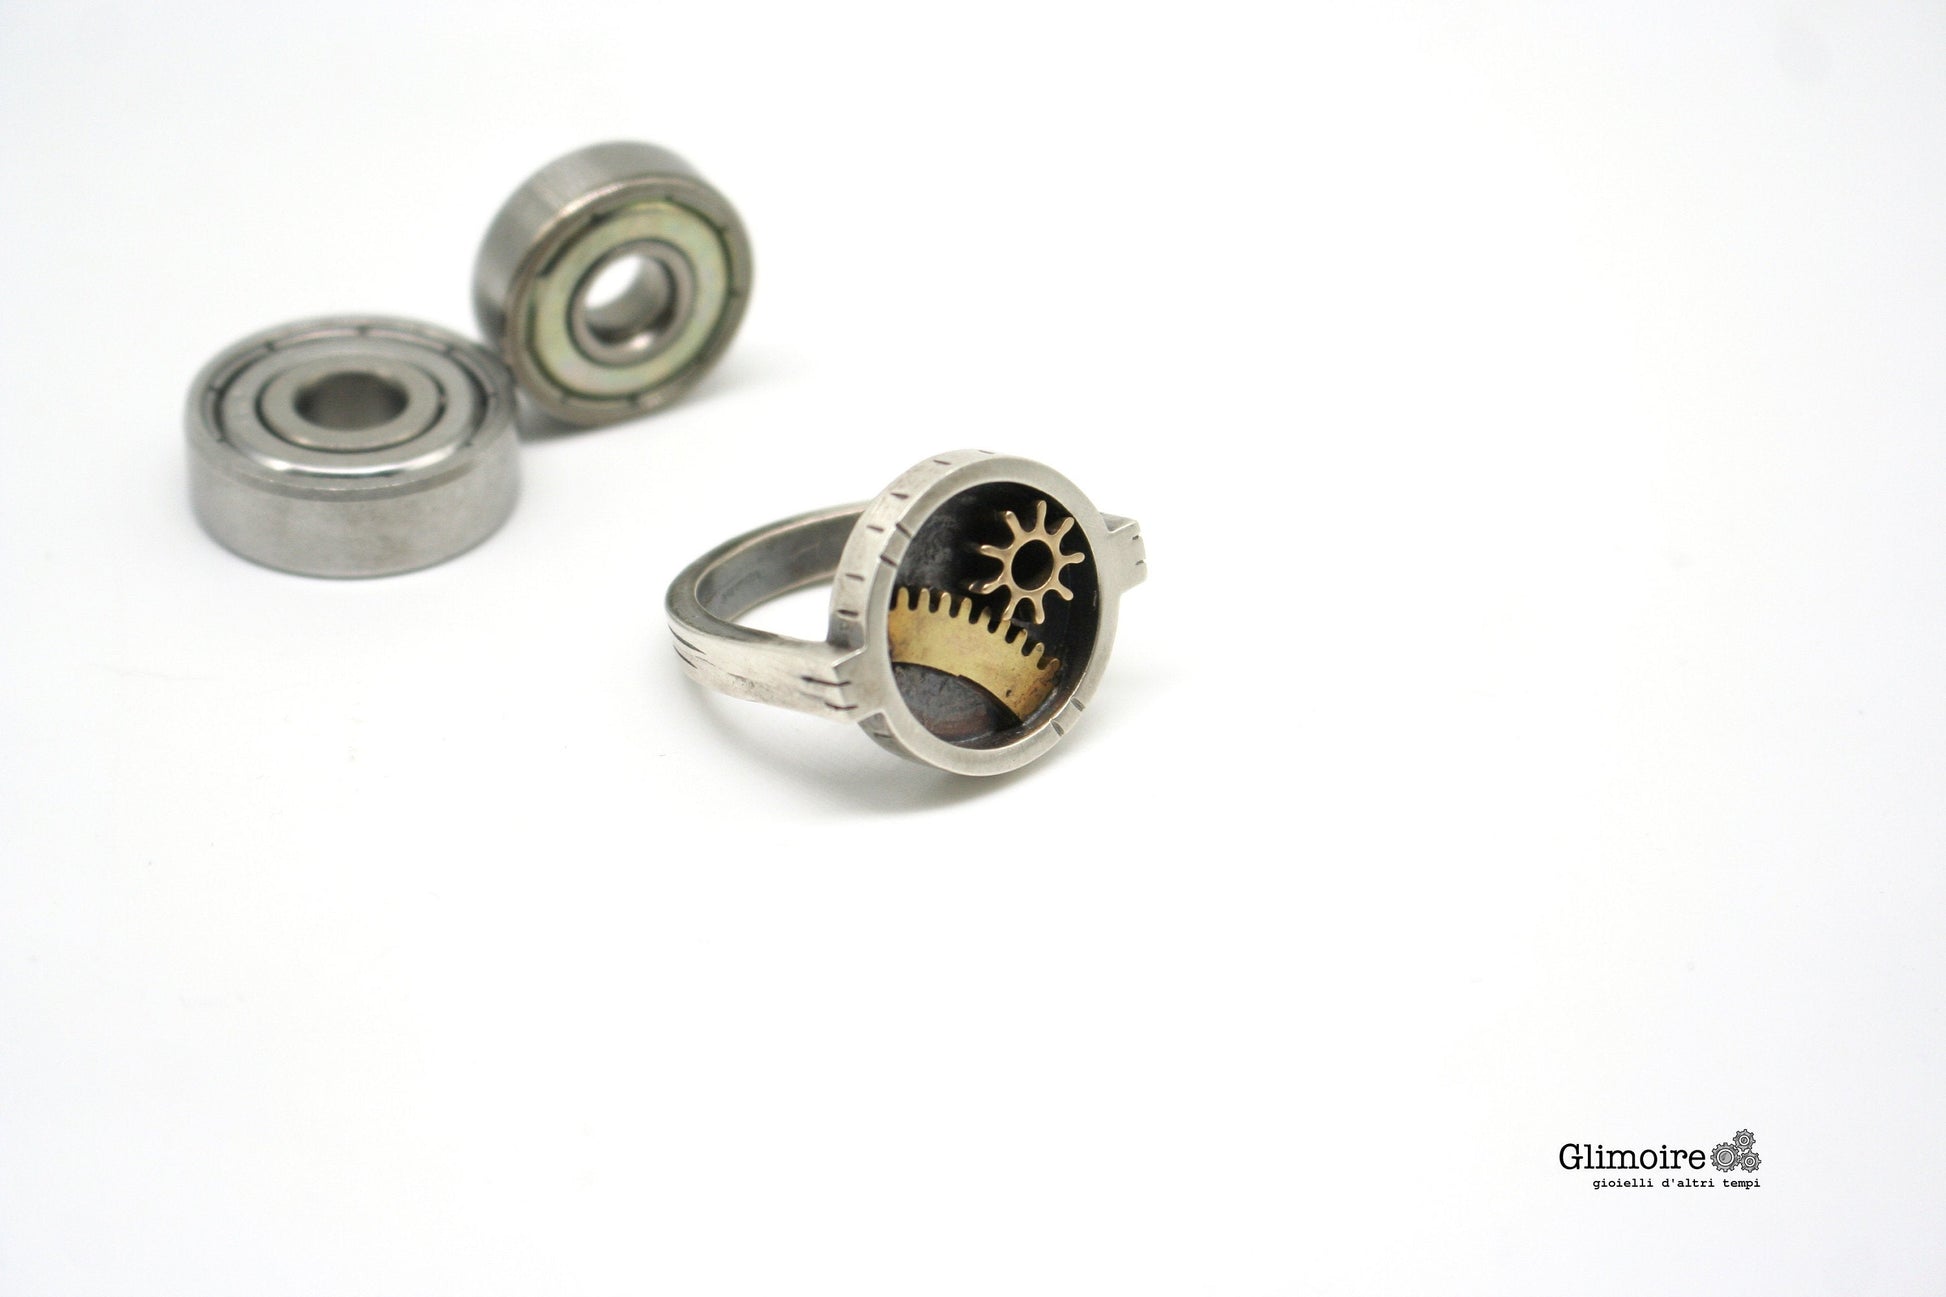 Anello industrial tondo - forze e attrito - anello con ingranaggi art.312 - Glimoire